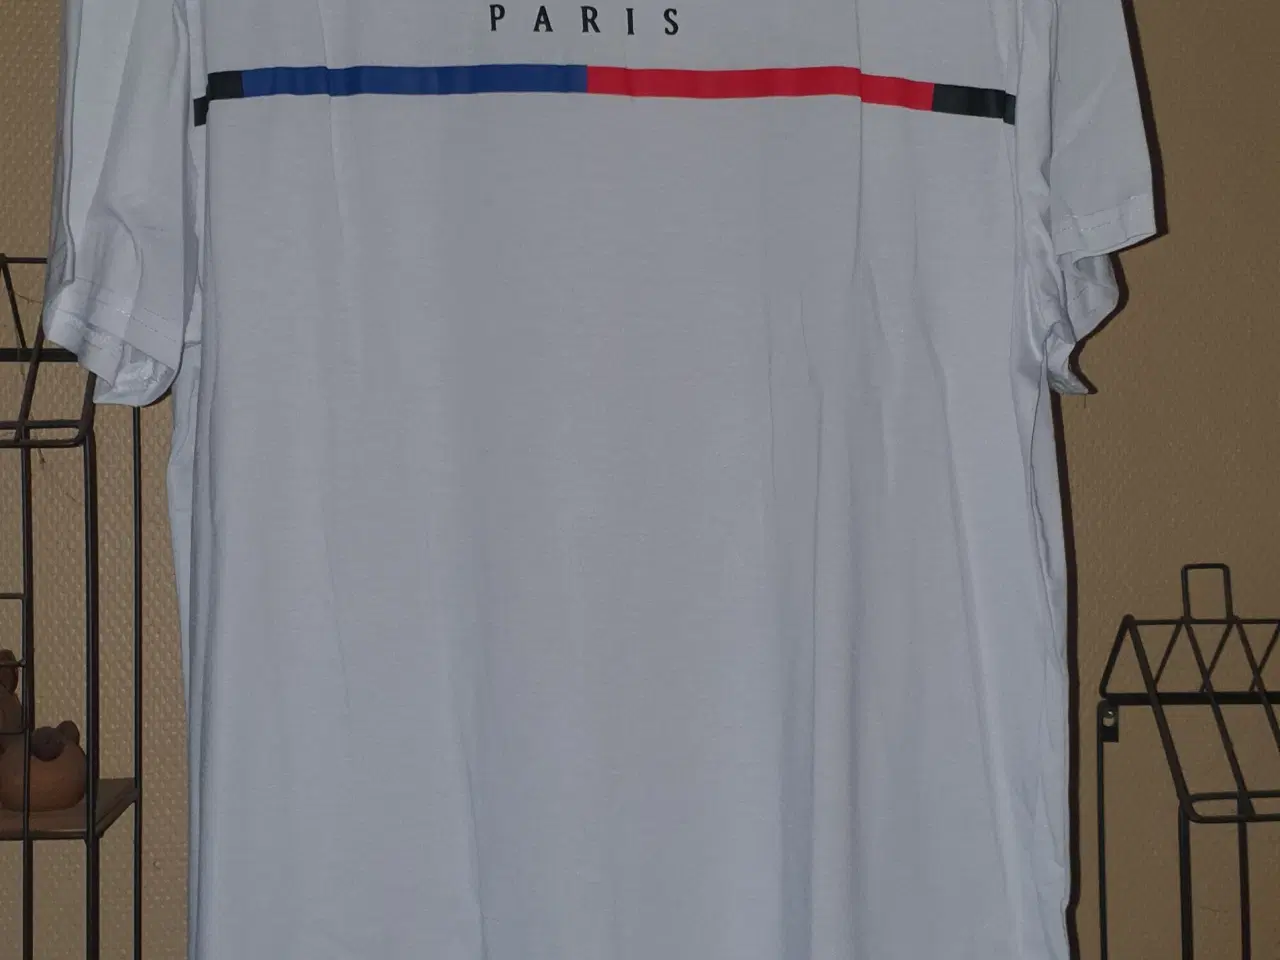 Billede 1 - Hvid T-shirt med Paris tryk på brystet